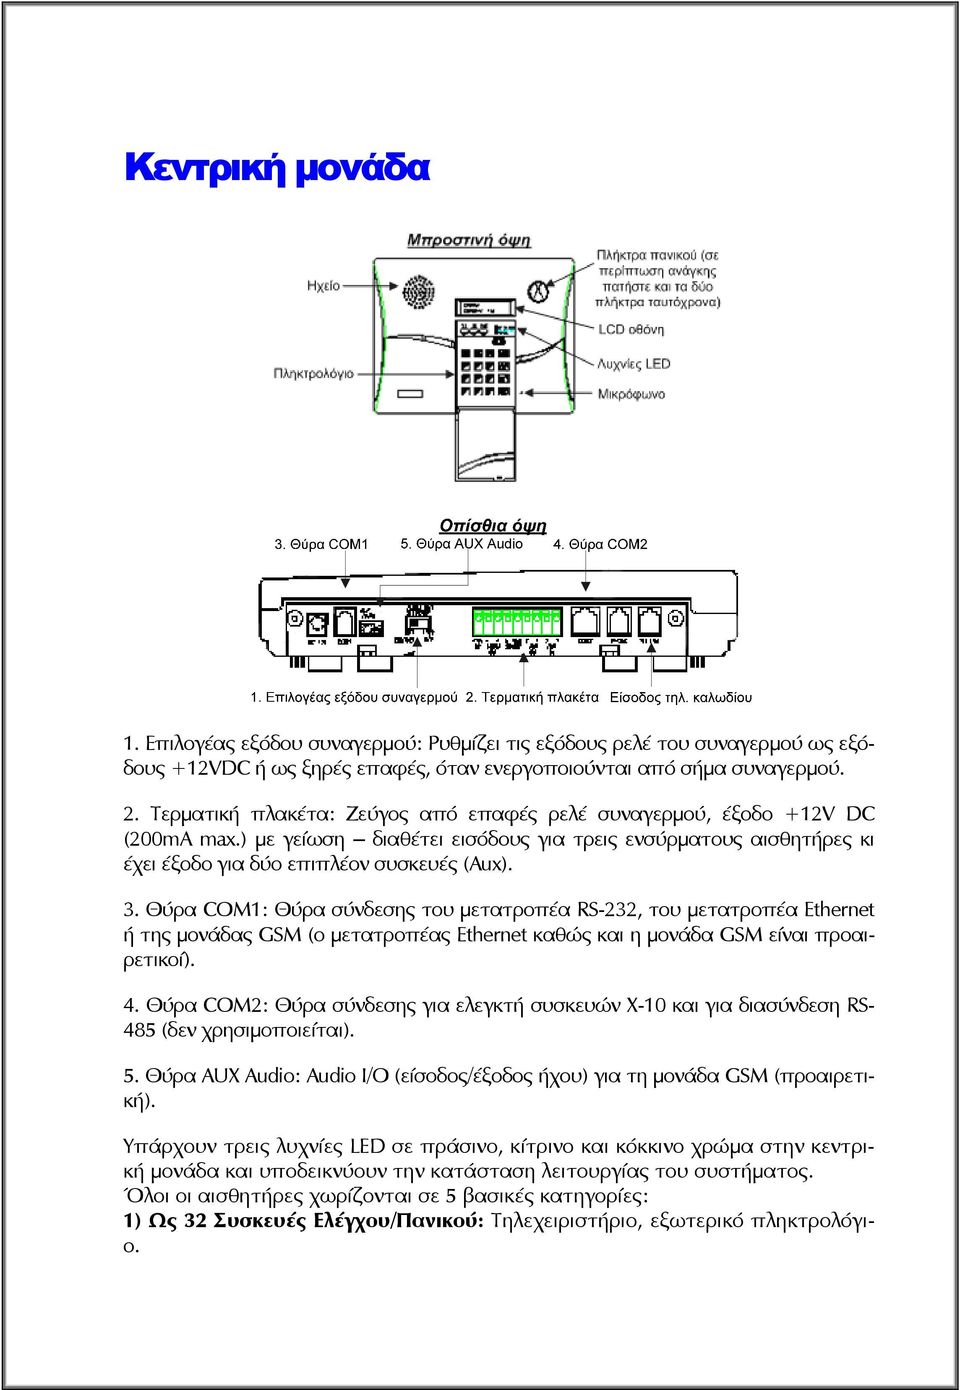 Θύρα COM1: Θύρα σύνδεσης του μετατροπέα RS-232, του μετατροπέα Ethernet ή της μονάδας GSM (ο μετατροπέας Ethernet καθώς και η μονάδα GSM είναι προαιρετικοί). 4.